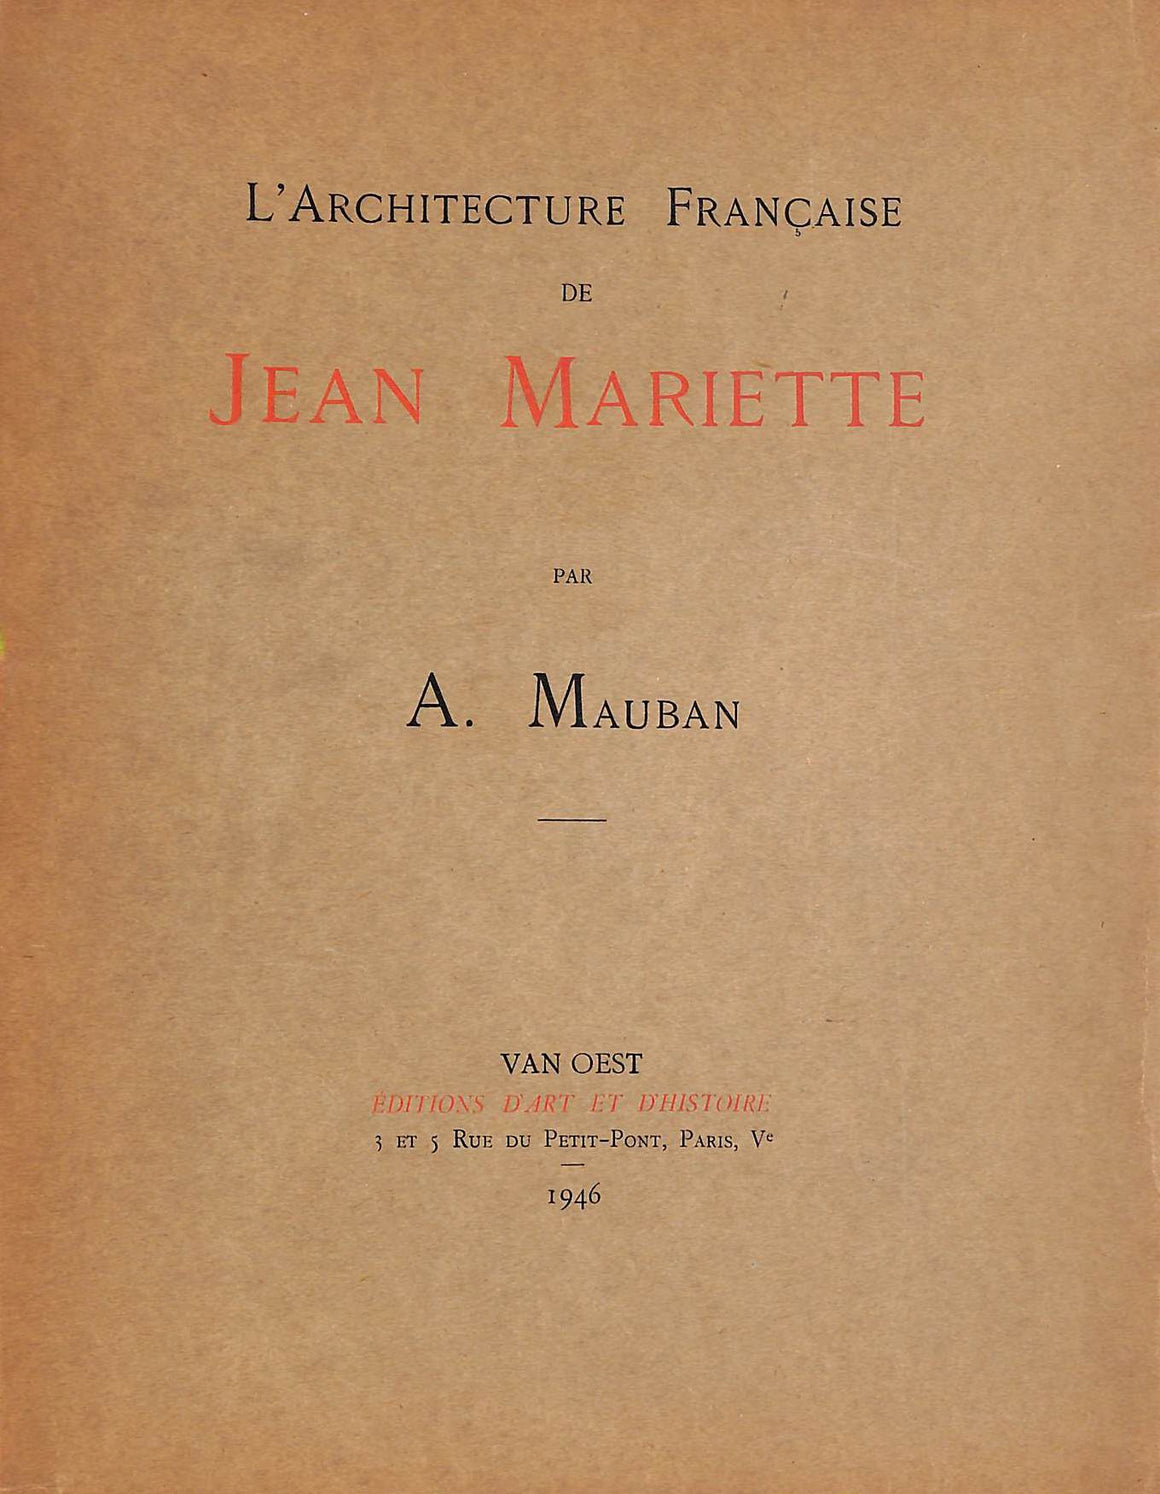 "L'Architecture Francaise De Jean Mariette" 1945 MAUBAN, A.